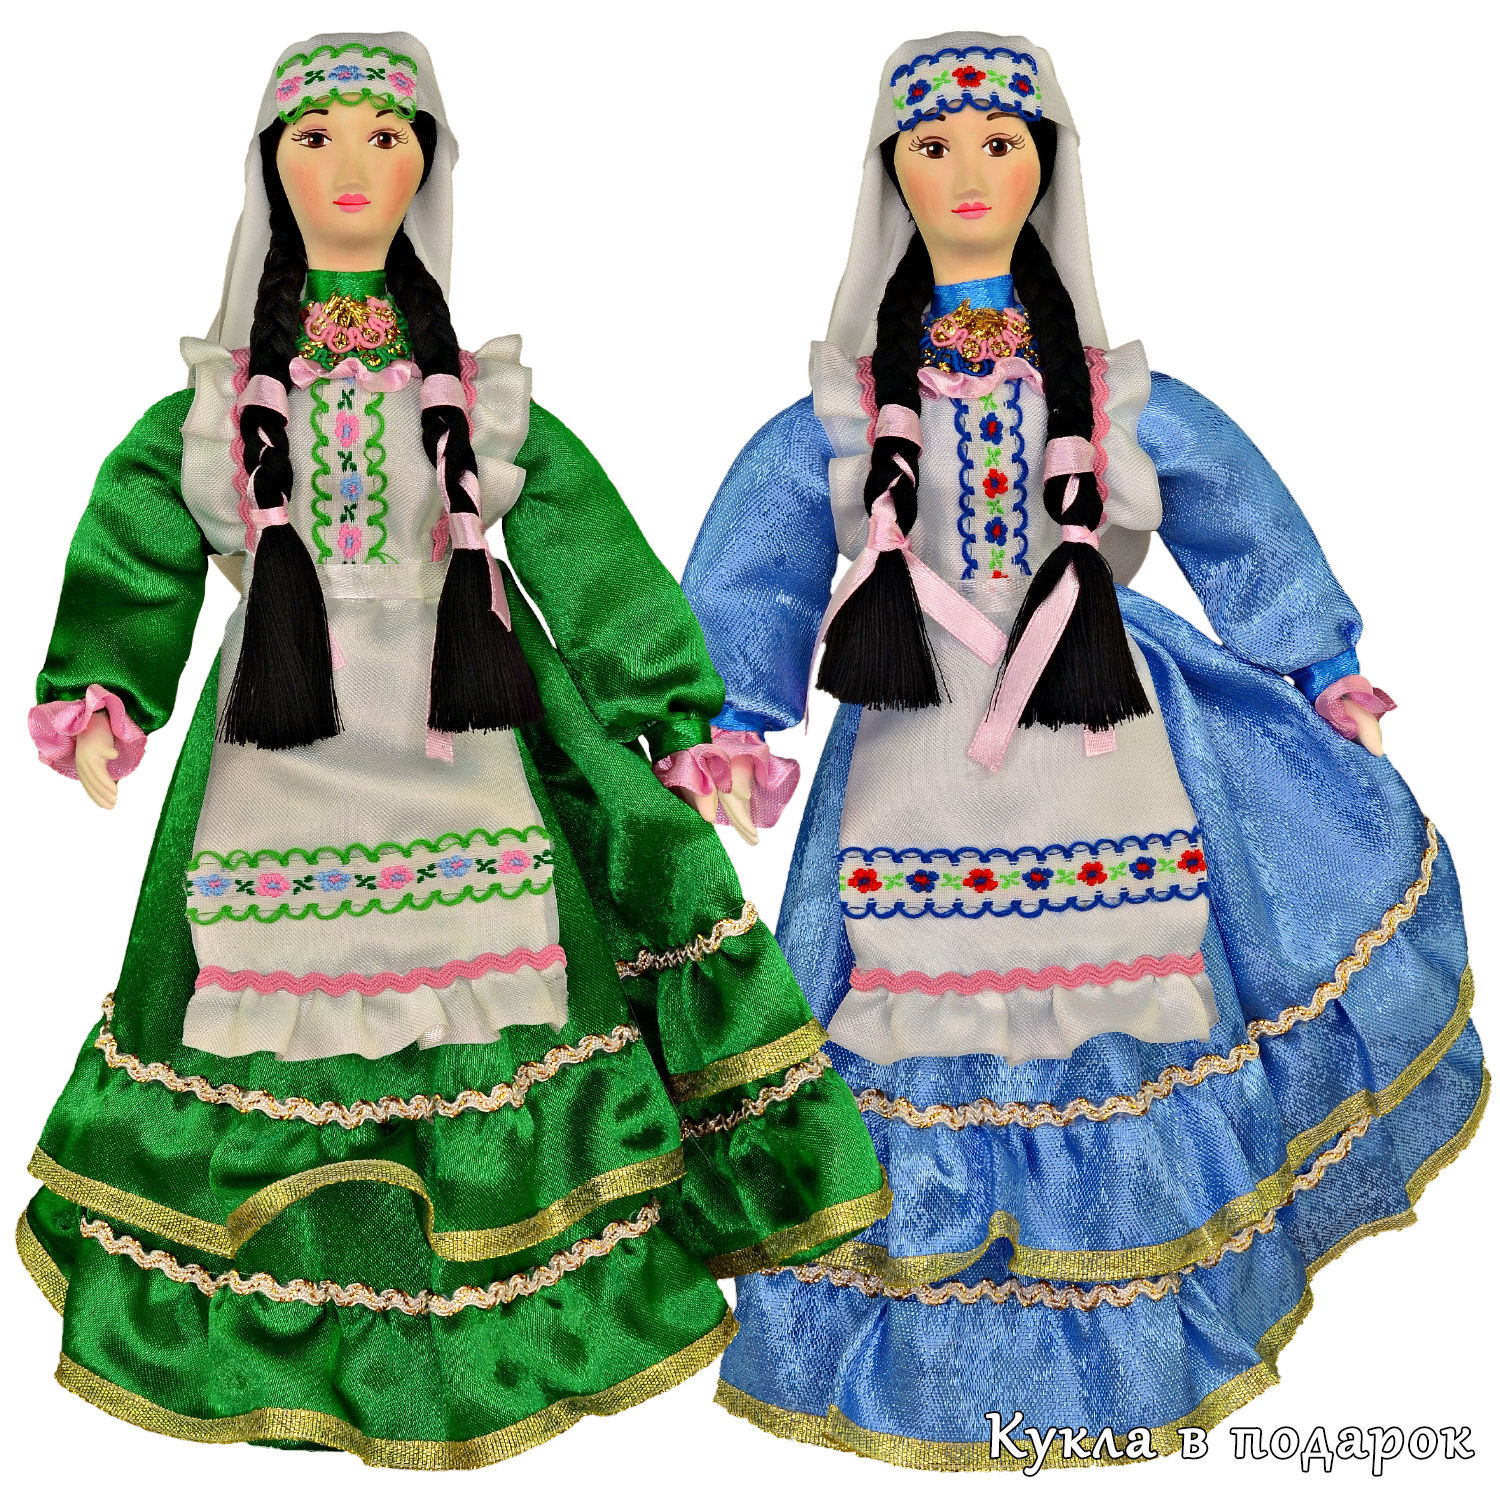 Технологию изготовления безликих татарских кукол раскрыли в пресс-центре ЧМ Казани